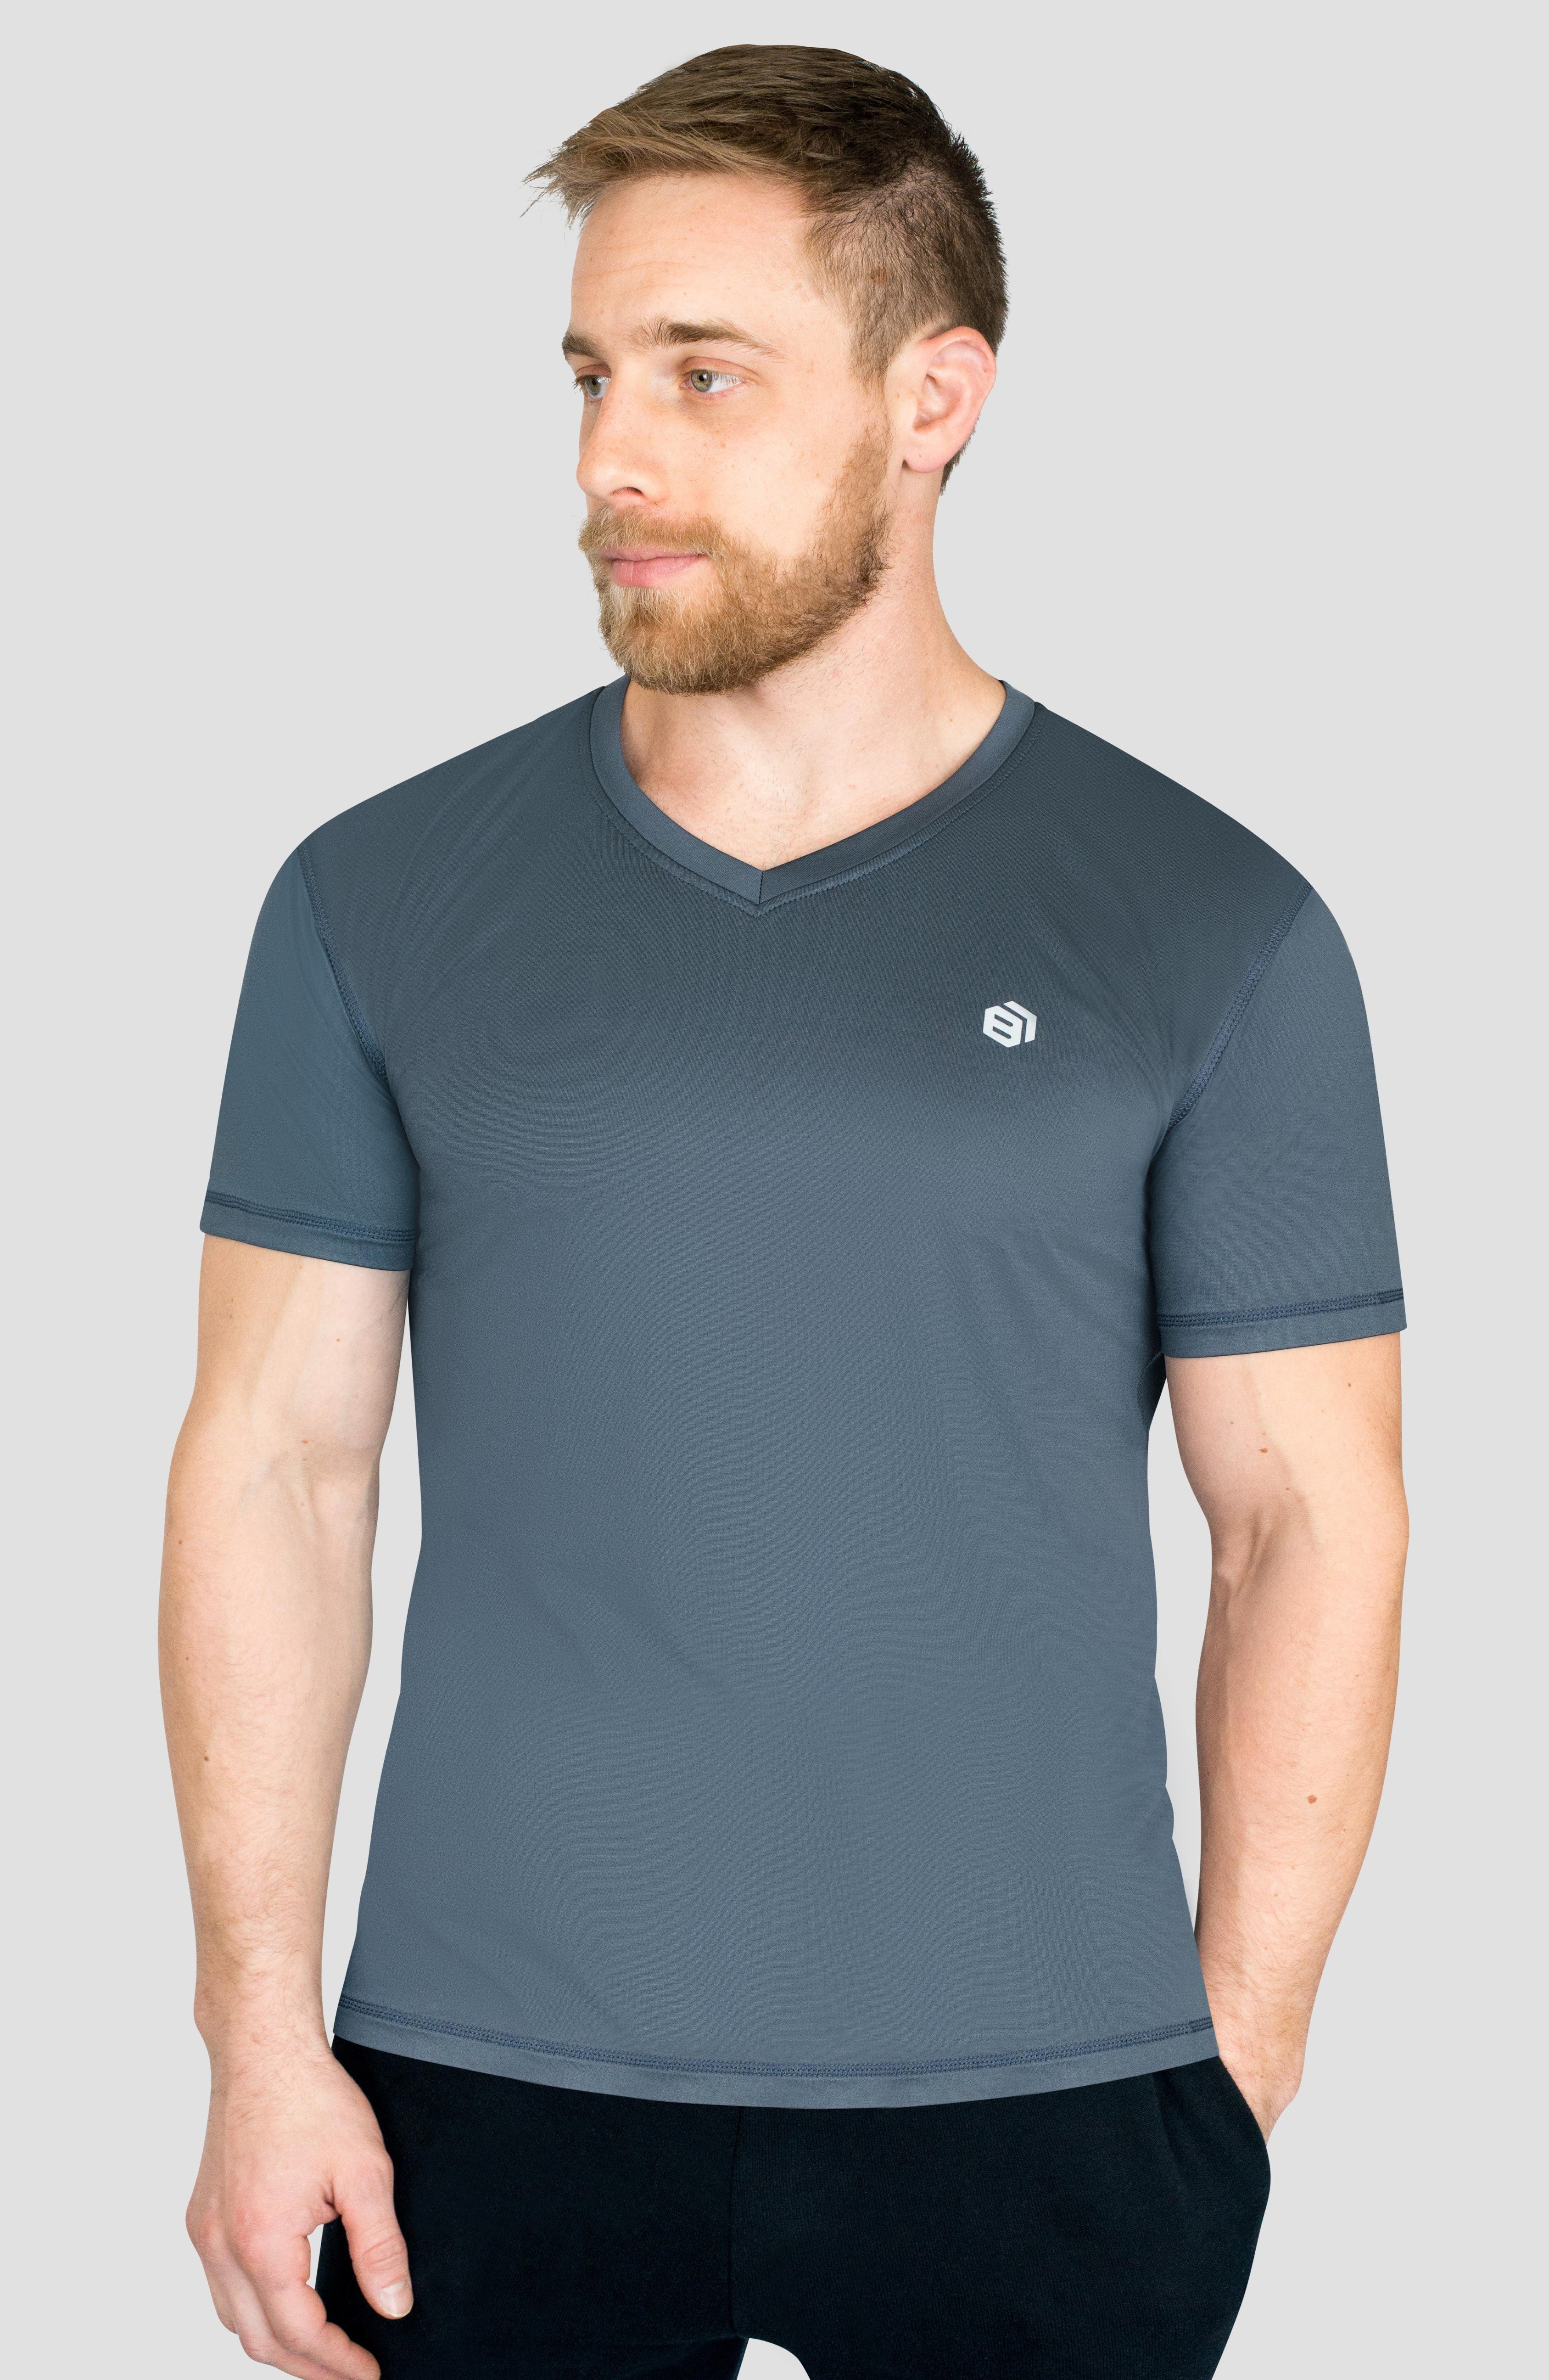 Men's Compression Dry-Fit V-Neck T-Shirts